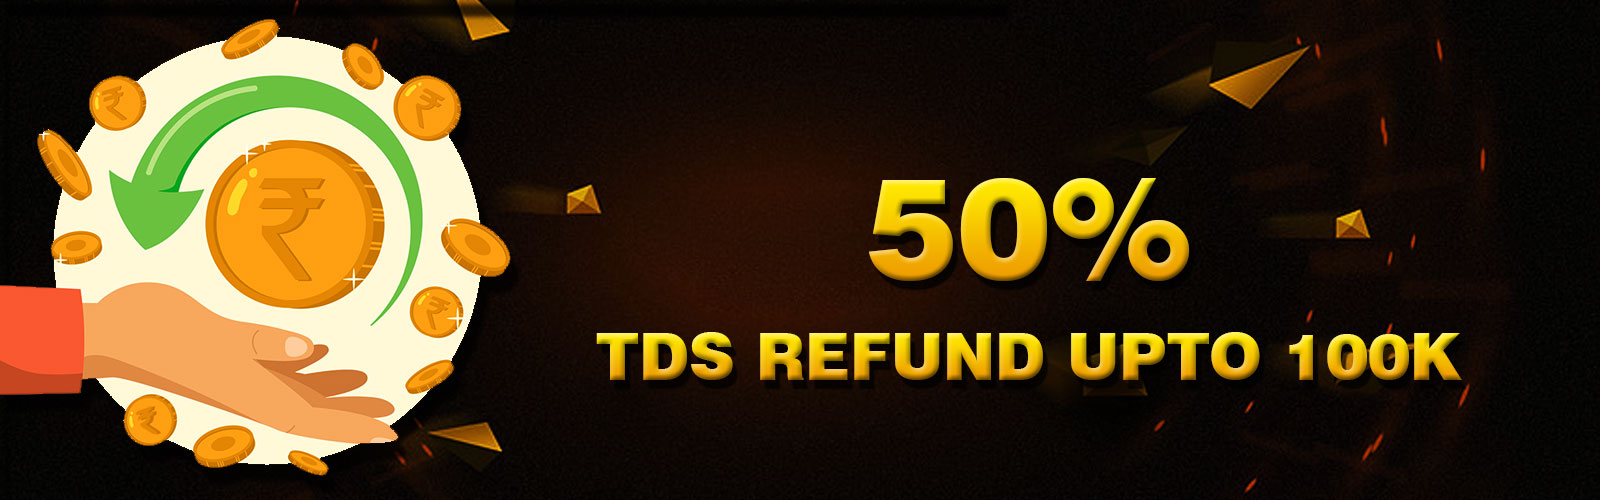 50% Flat TDS Refund